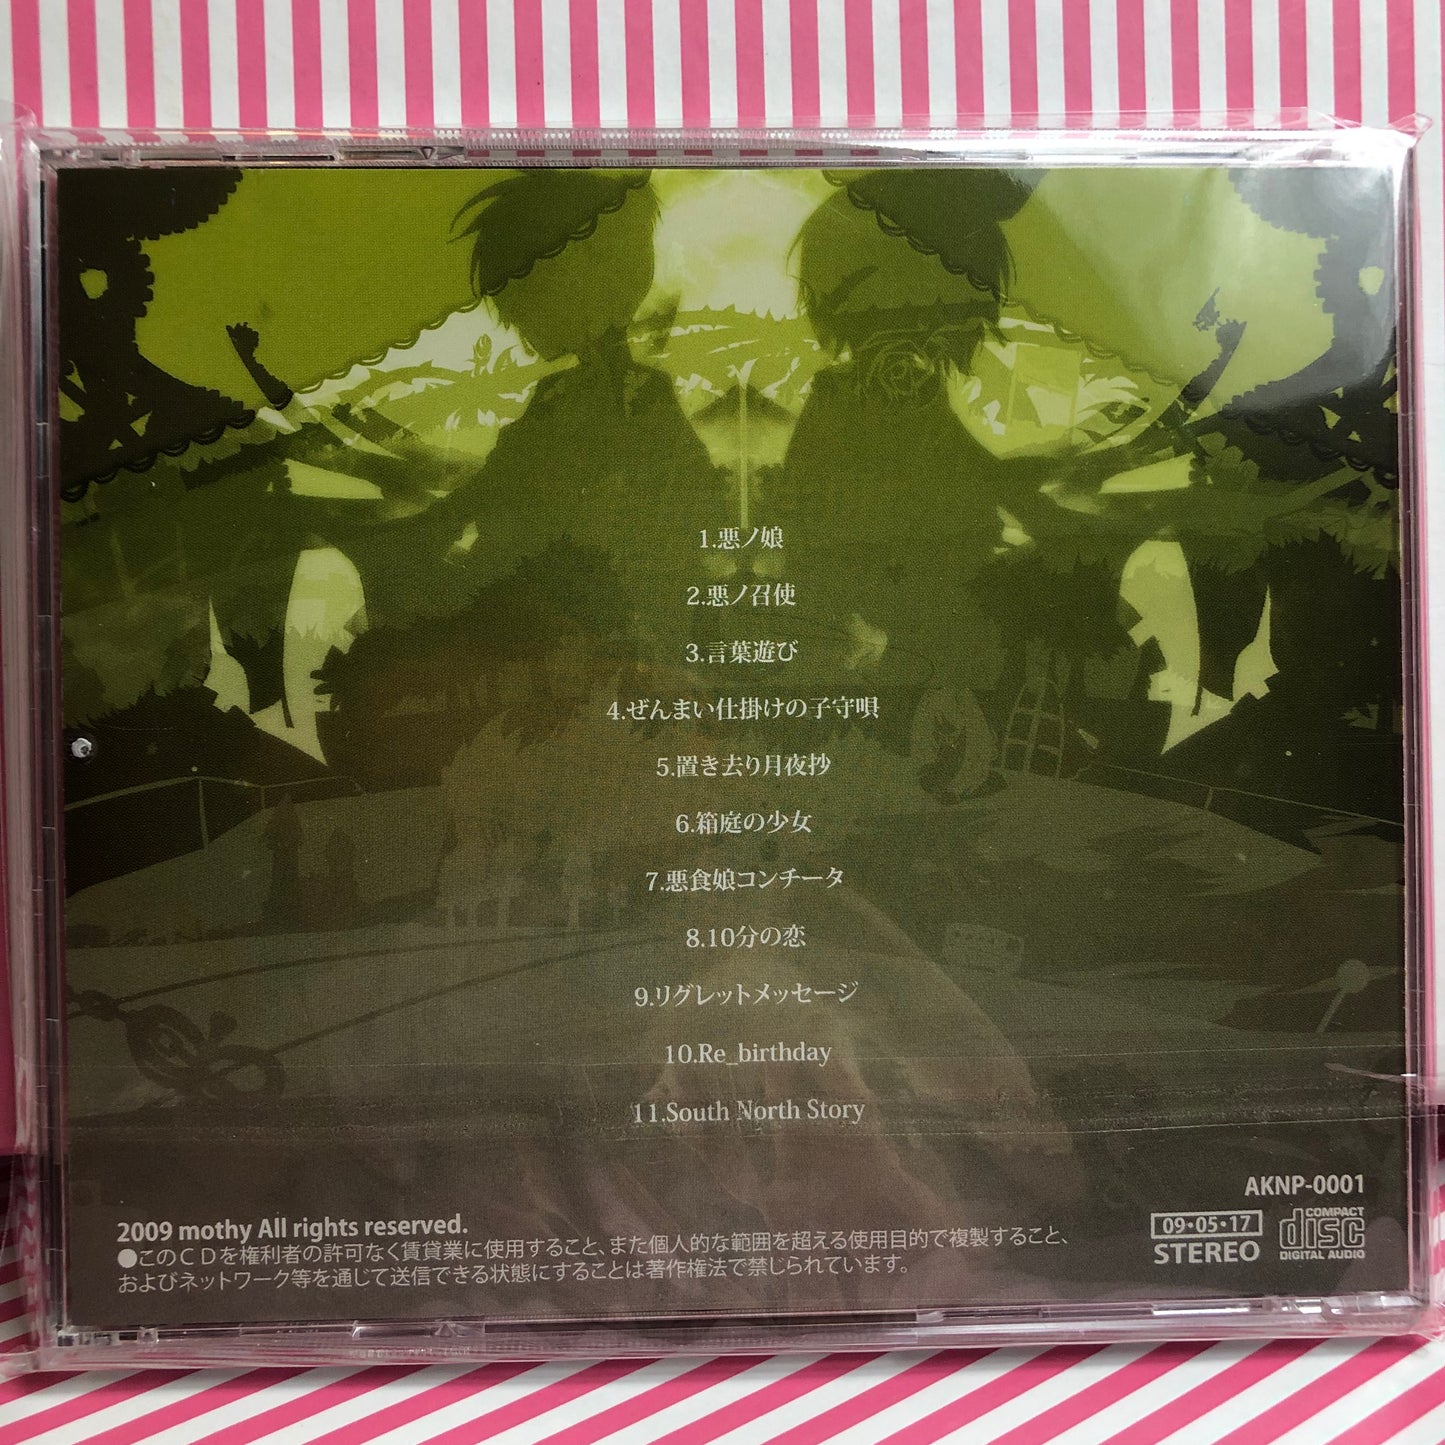 mothy / akunoP - Evils Theater CD